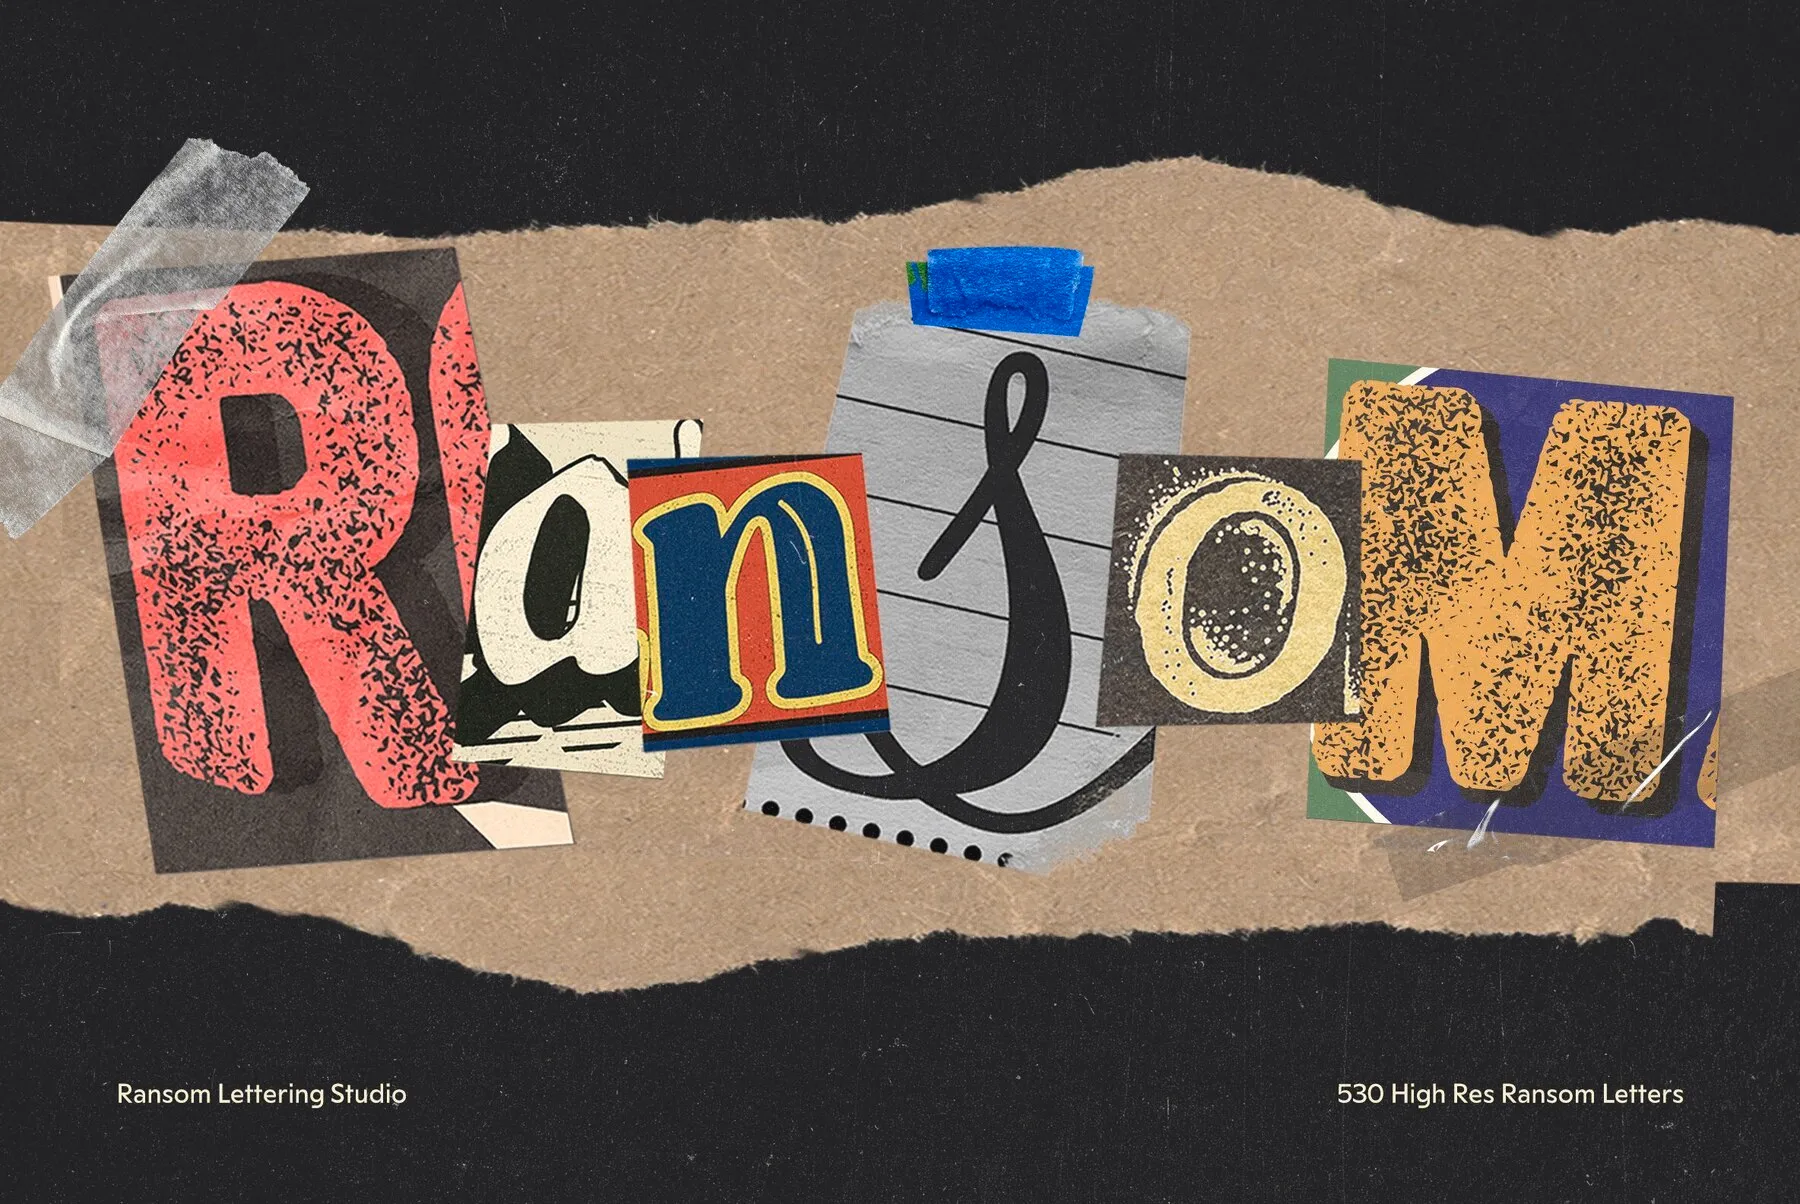 Ransom Lettering Studio